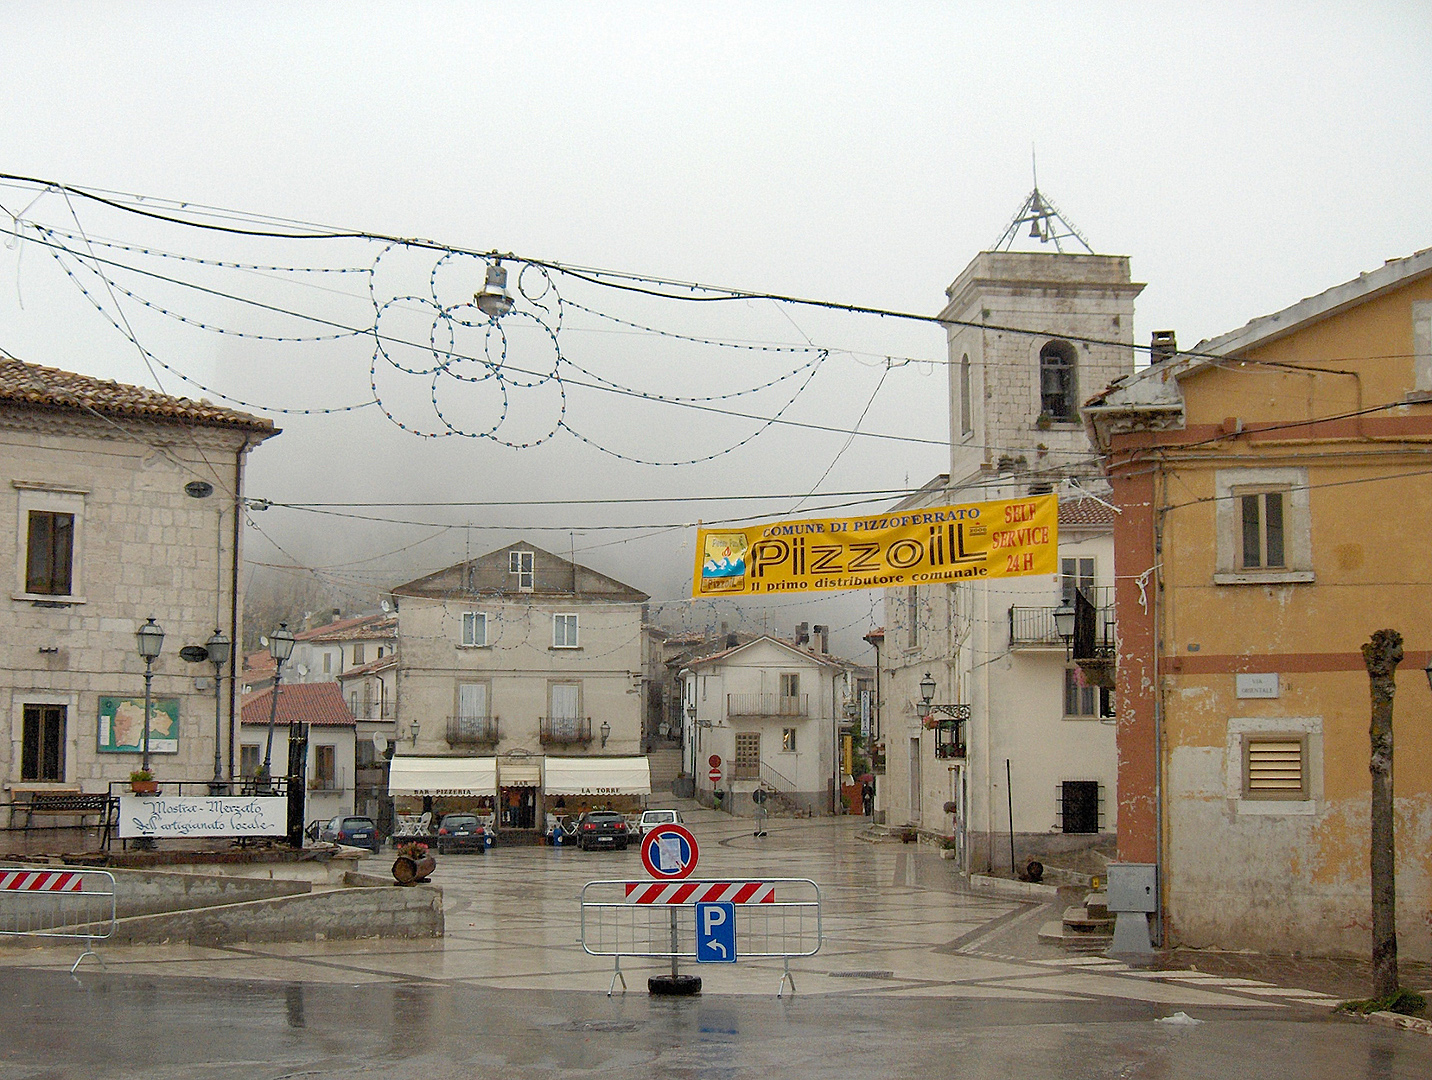 Pizzoferrato (Abruzzen, Itali); Pizzoferrato (Abruzzo, Italy)